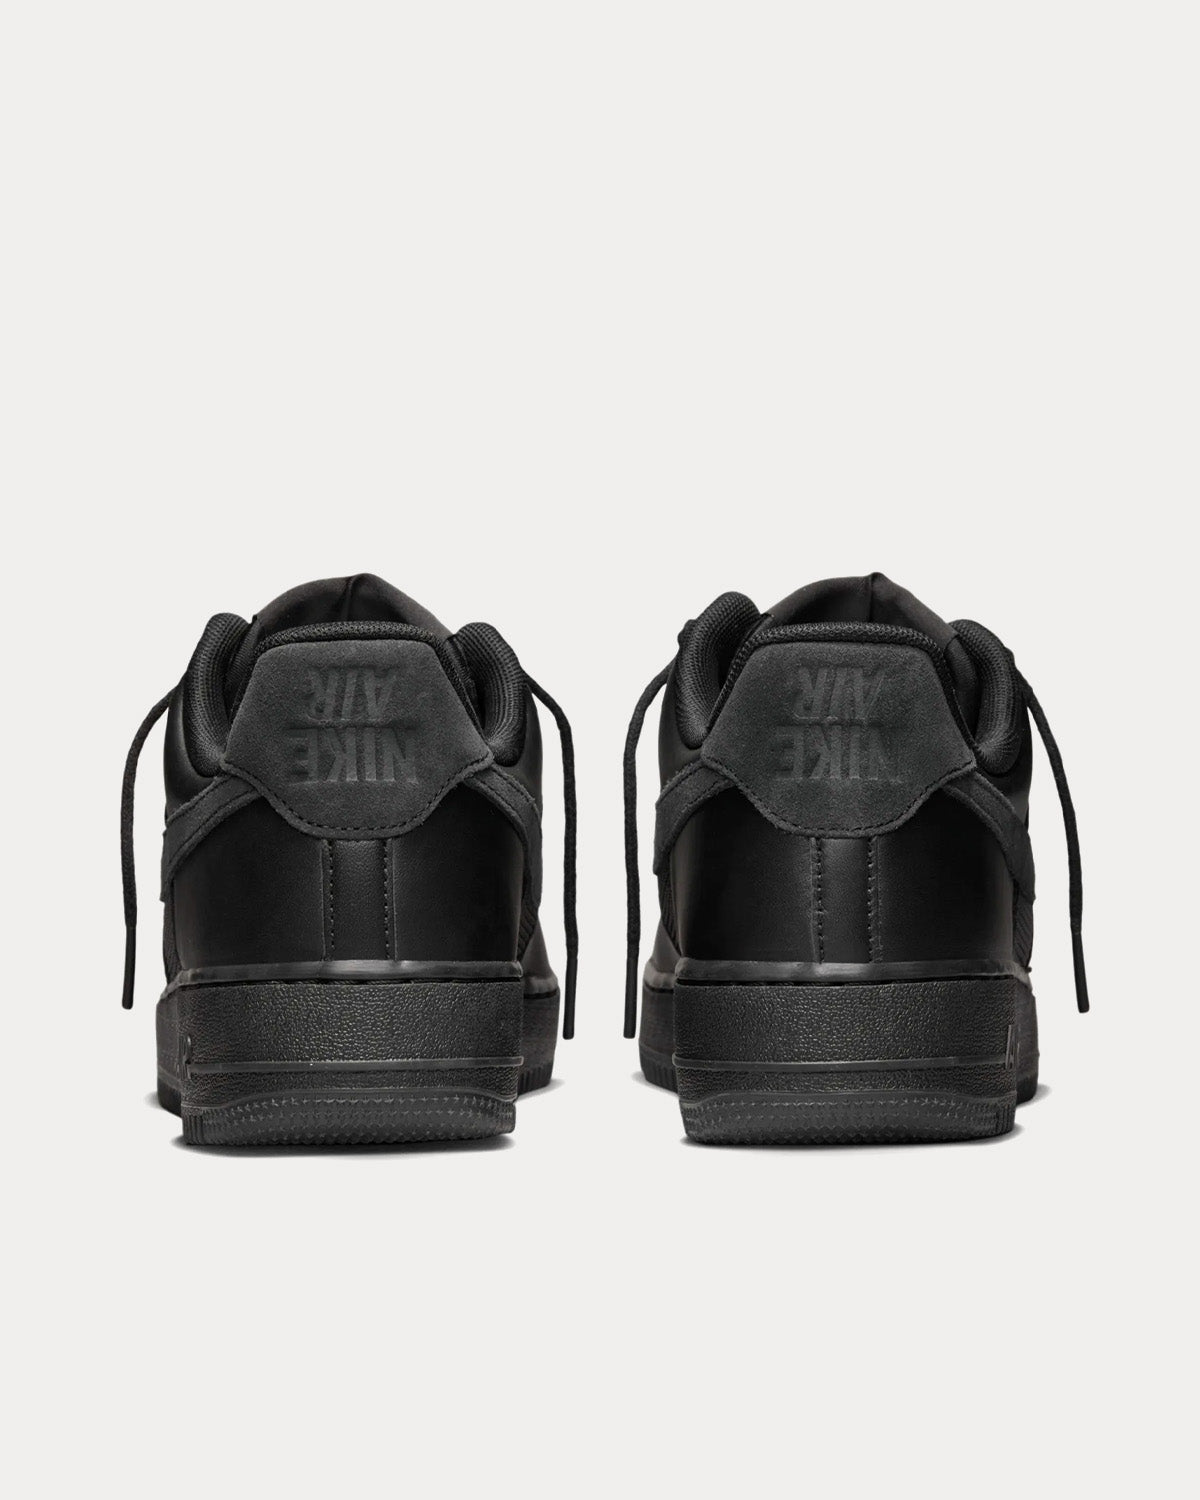 Nike x Slam Jam - AF-1 Black / Off-Noir Low Top Sneakers